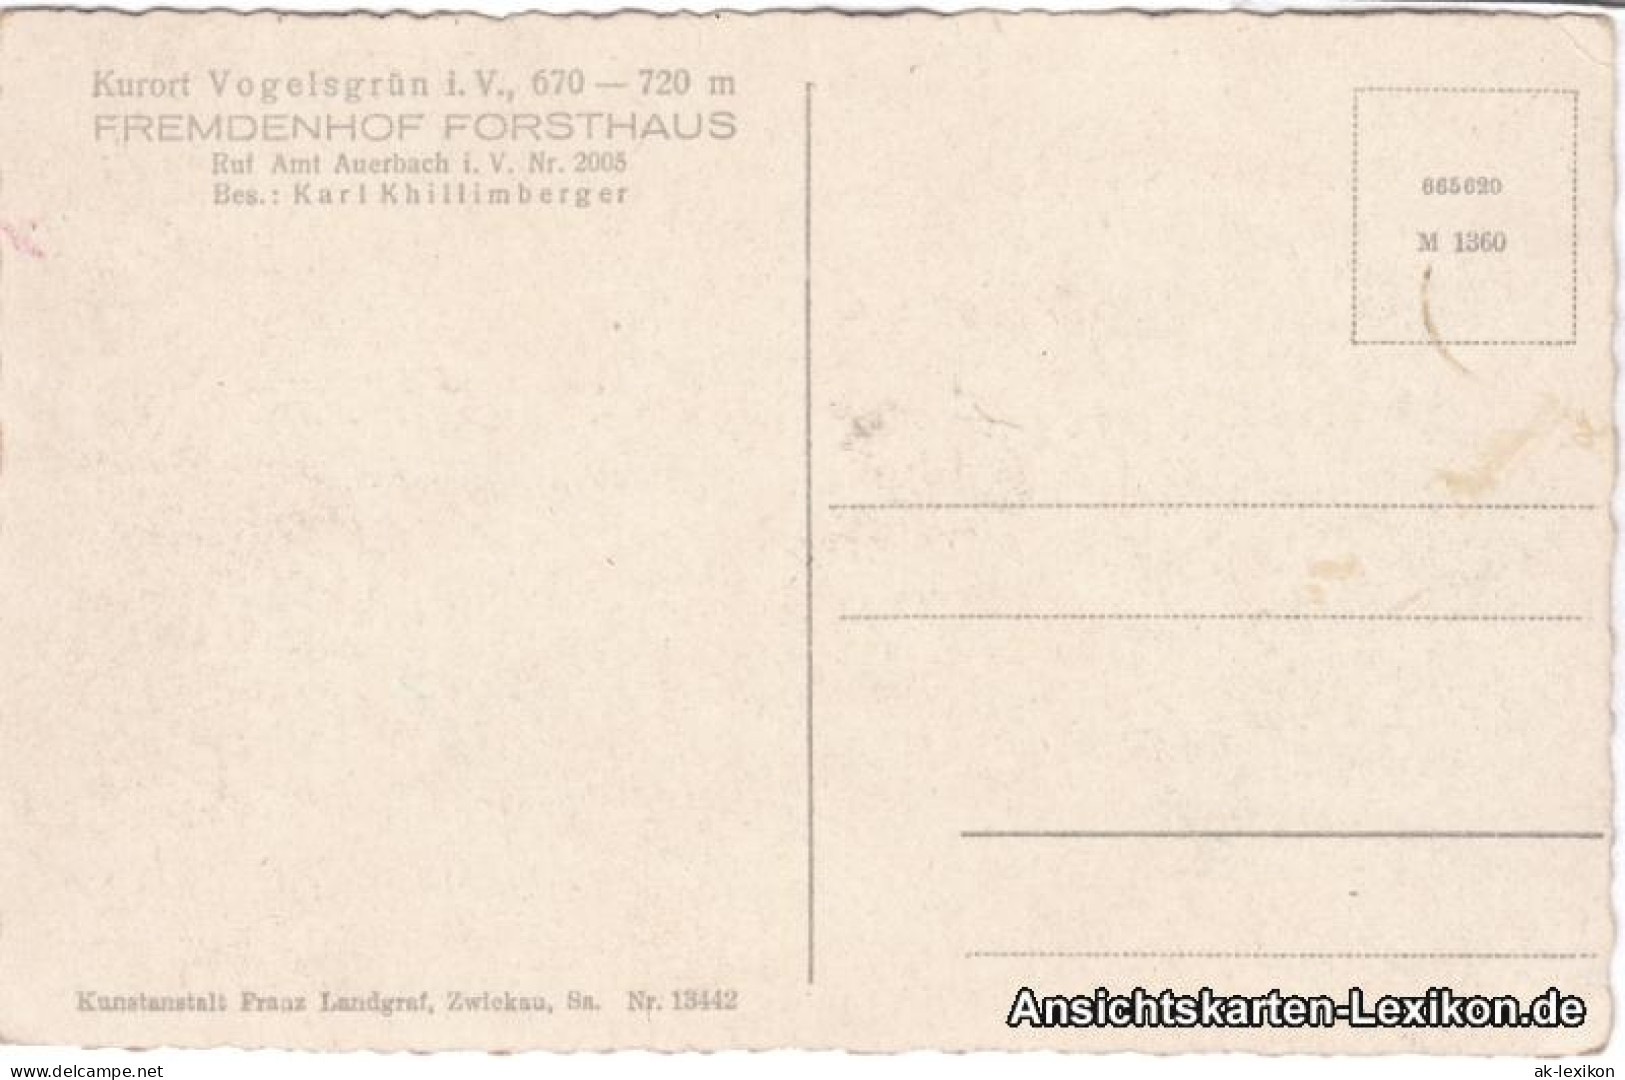 Vogelsgrün-Auerbach (Vogtland) Fremdenhof Forsthaus - Saal 1932  - Auerbach (Vogtland)